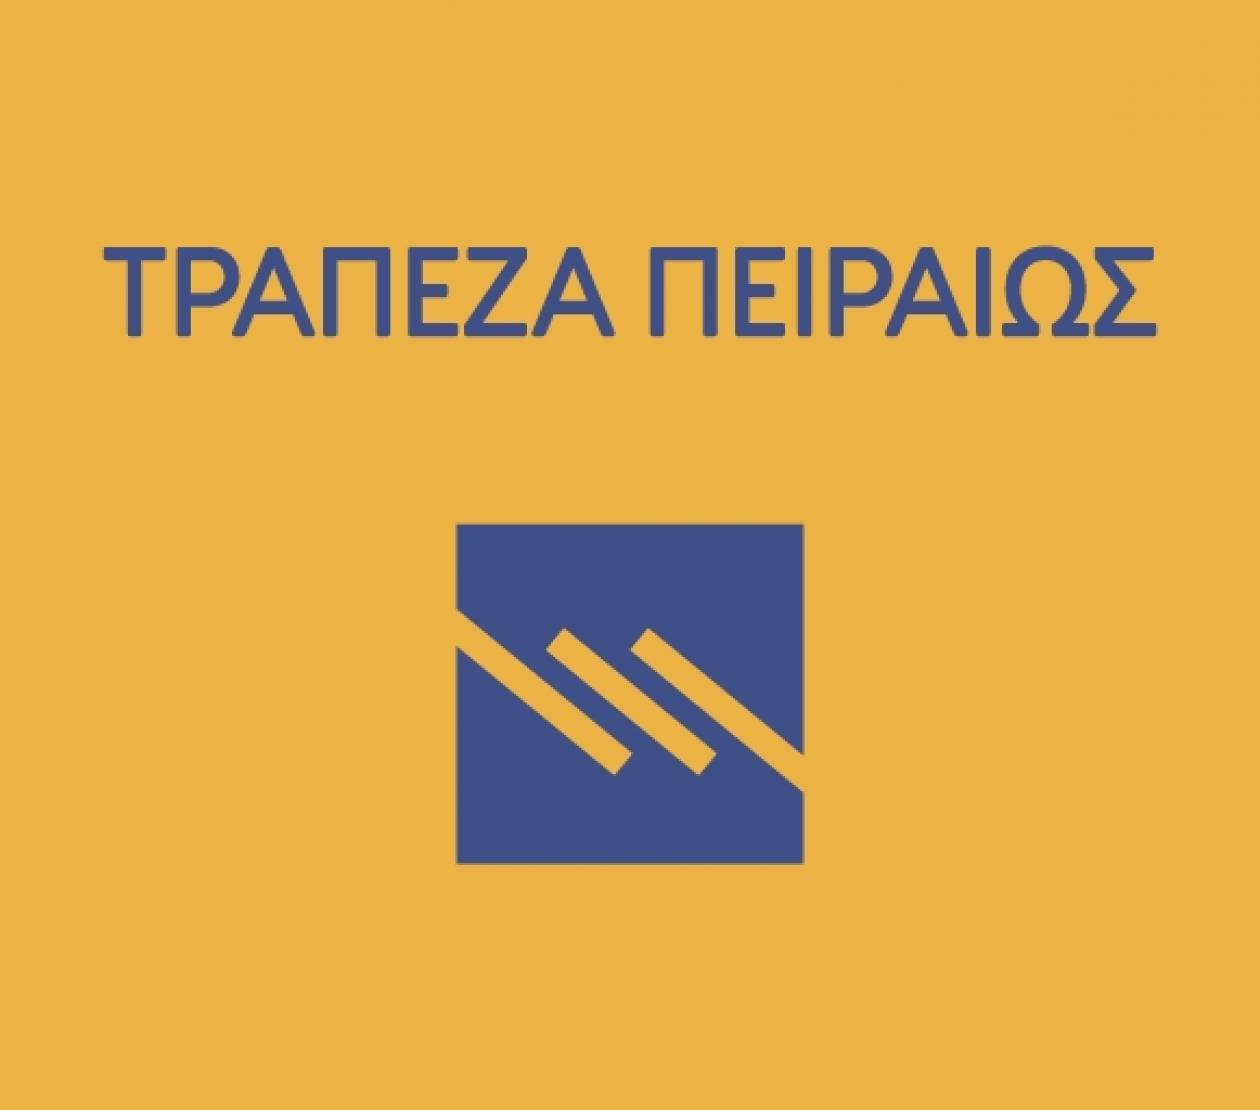 Υπό ενιαίο σύστημα πληροφορικής Τράπεζα Πειραιώς και Κύπρου